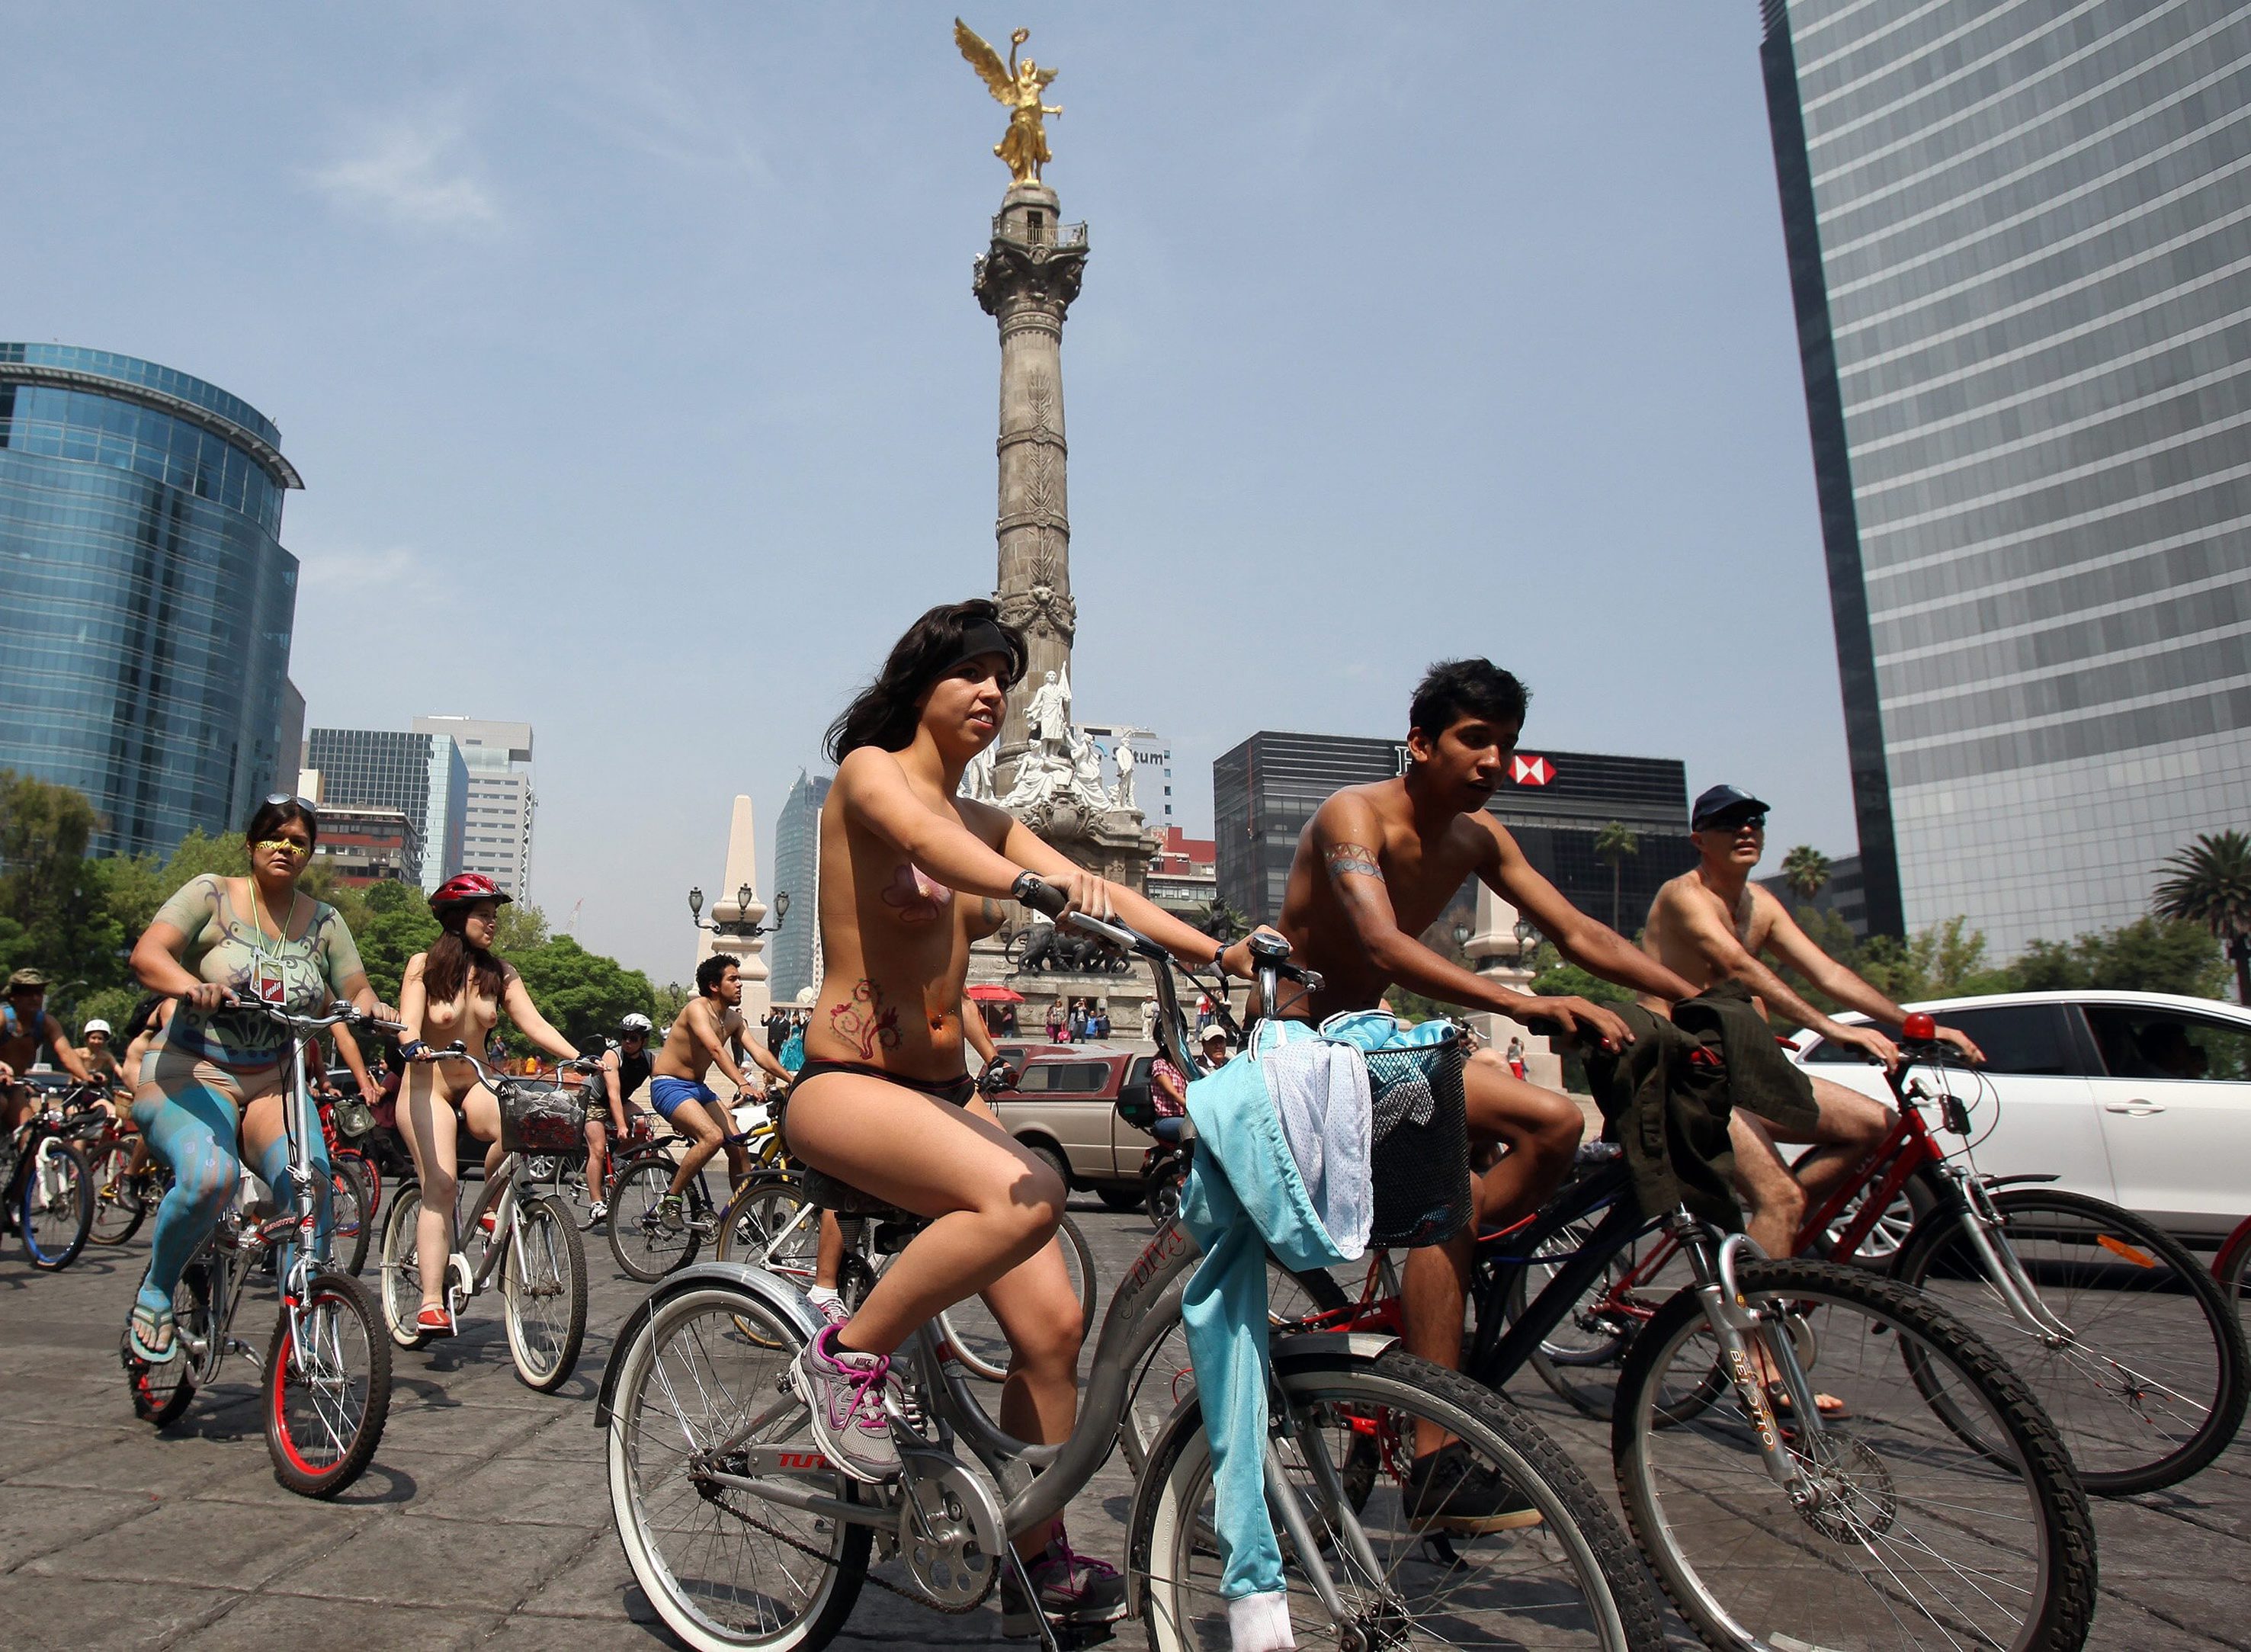 Περίπου 2.000 άτομα συμμετείχαν χθες γυμνά σε ποδηλατοδρομία στο κέντρο της...